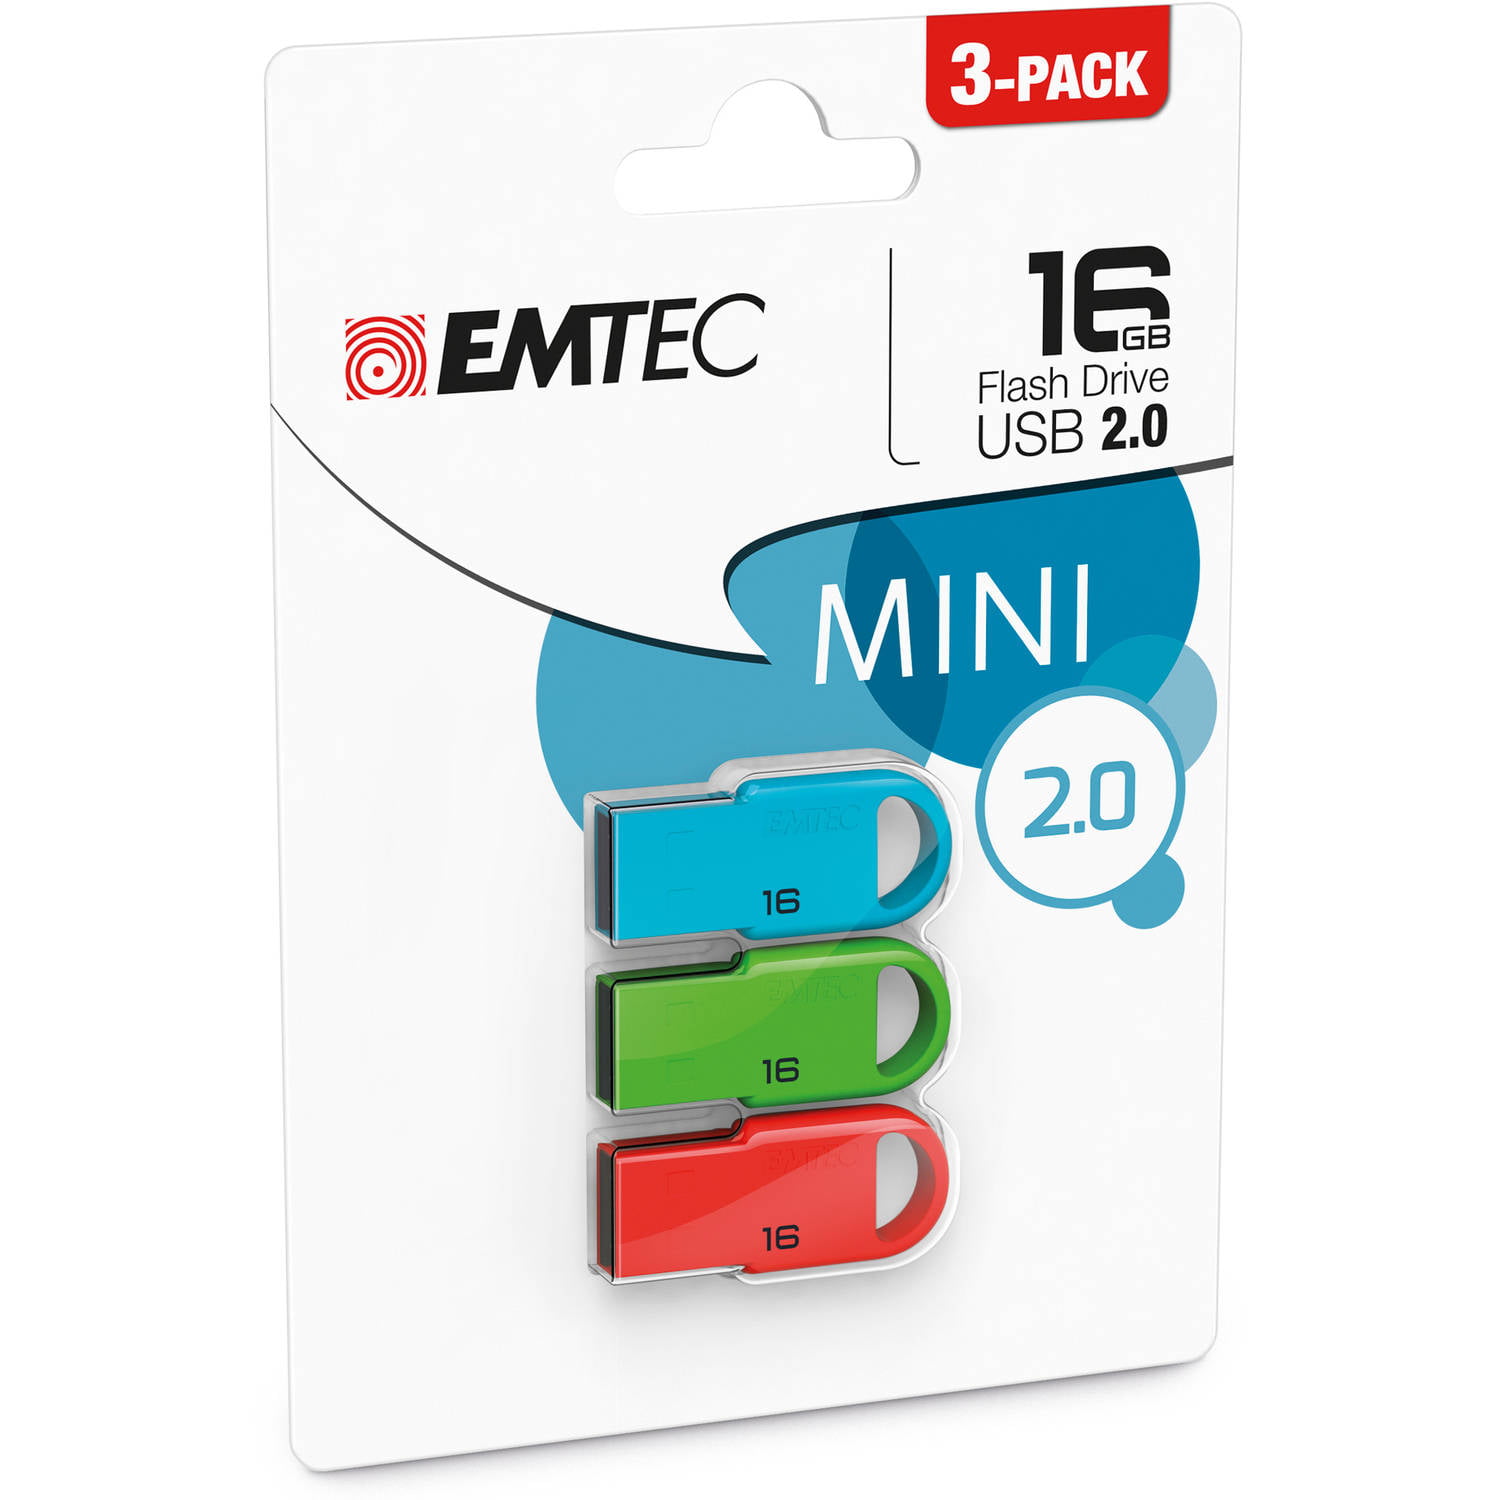 Picture of EMTEC ECMMD16GD252 Flash Drive - 16GB USB2.0 D252 Mini